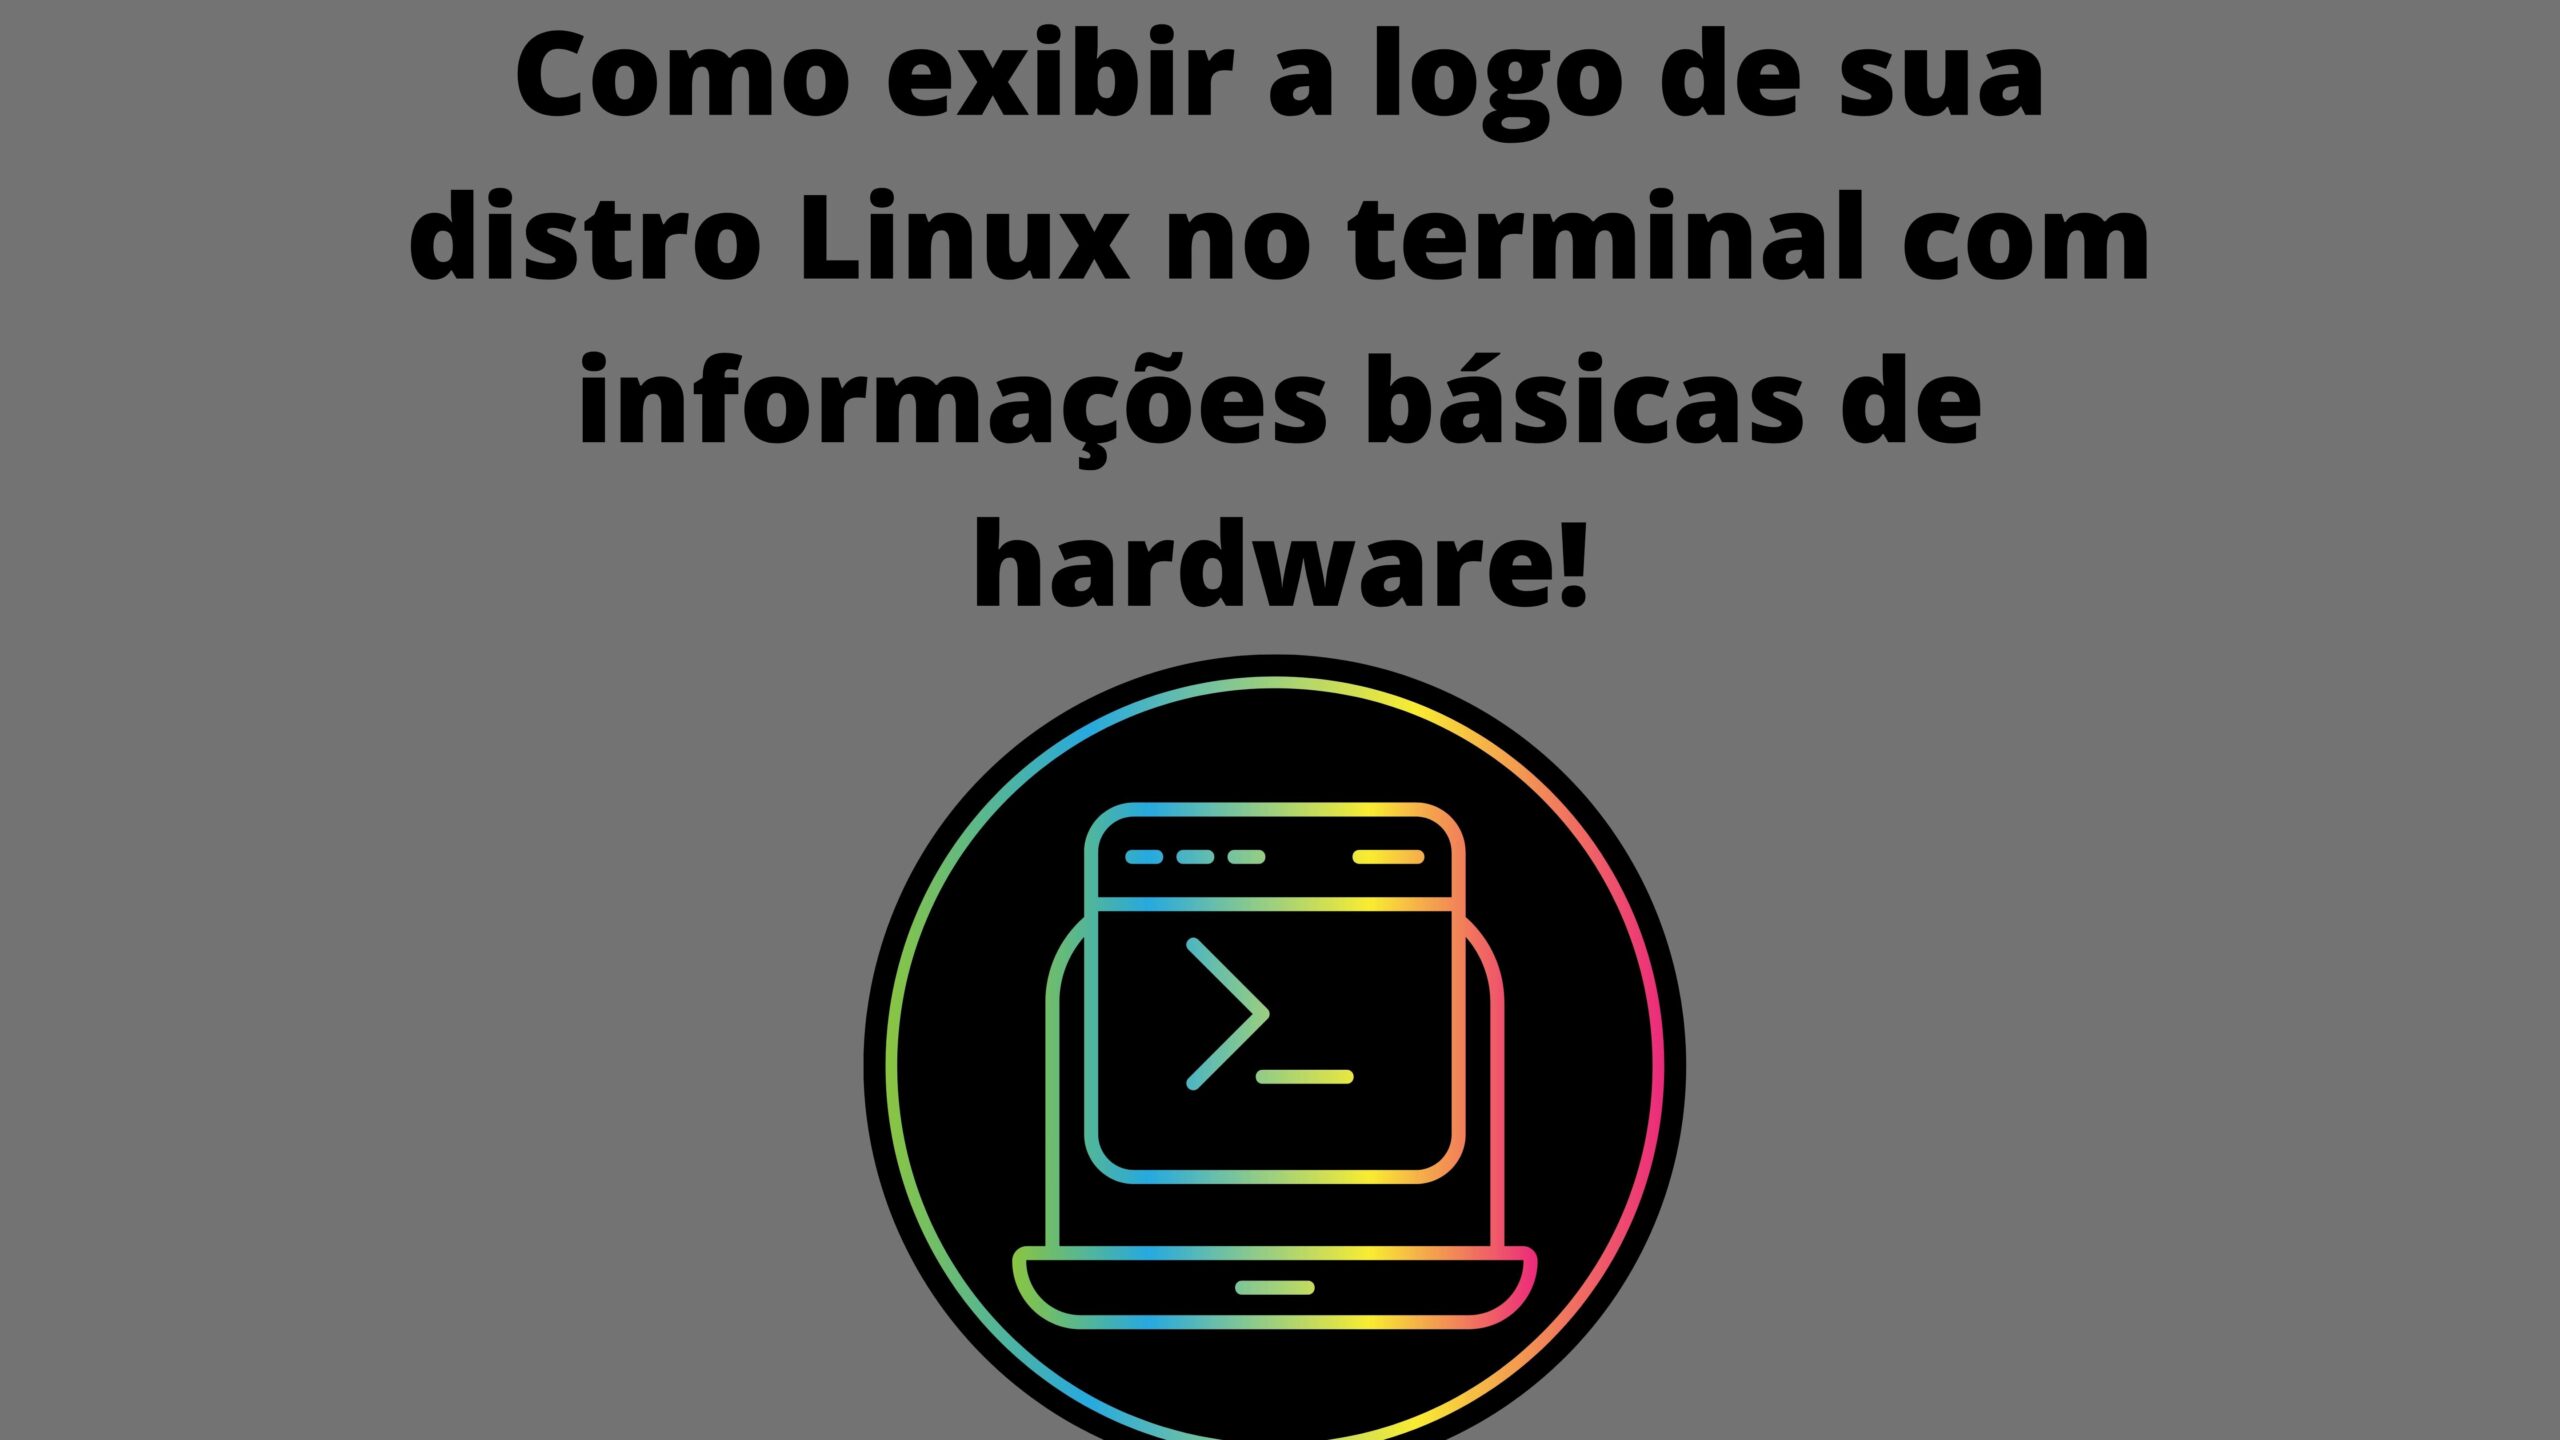 como-exibir-a-logo-de-sua-distro-linux-no-terminal-com-informacoes-basicas-de-hardware